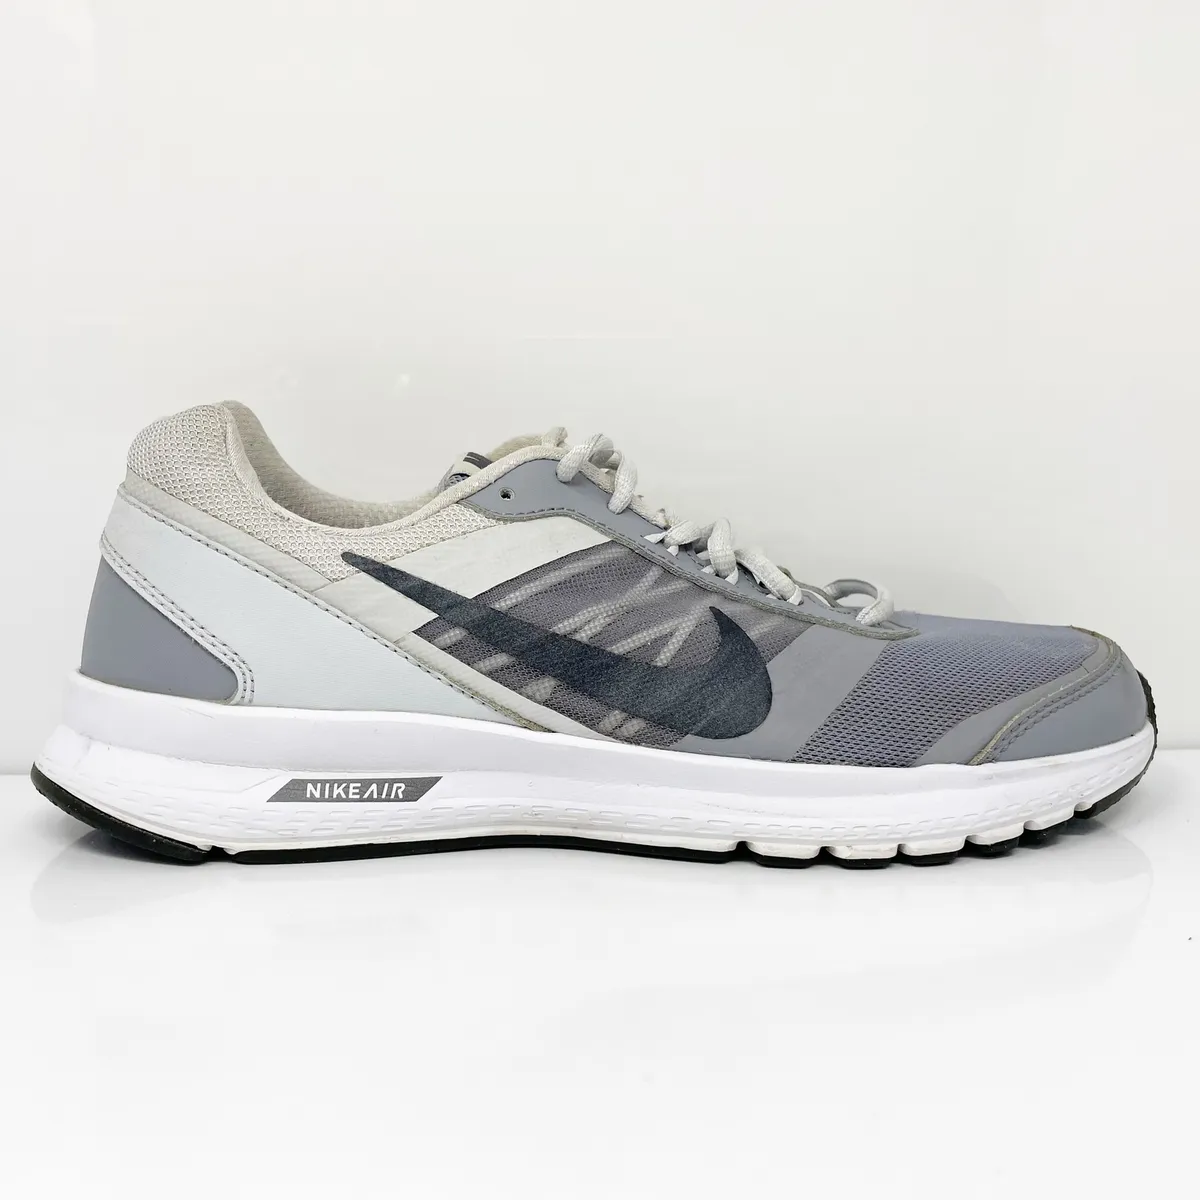 invención Conductividad que te diviertas Nike Mens Air Relentless 5 807092-005 Gray Running Shoes Sneakers Size 8 |  eBay